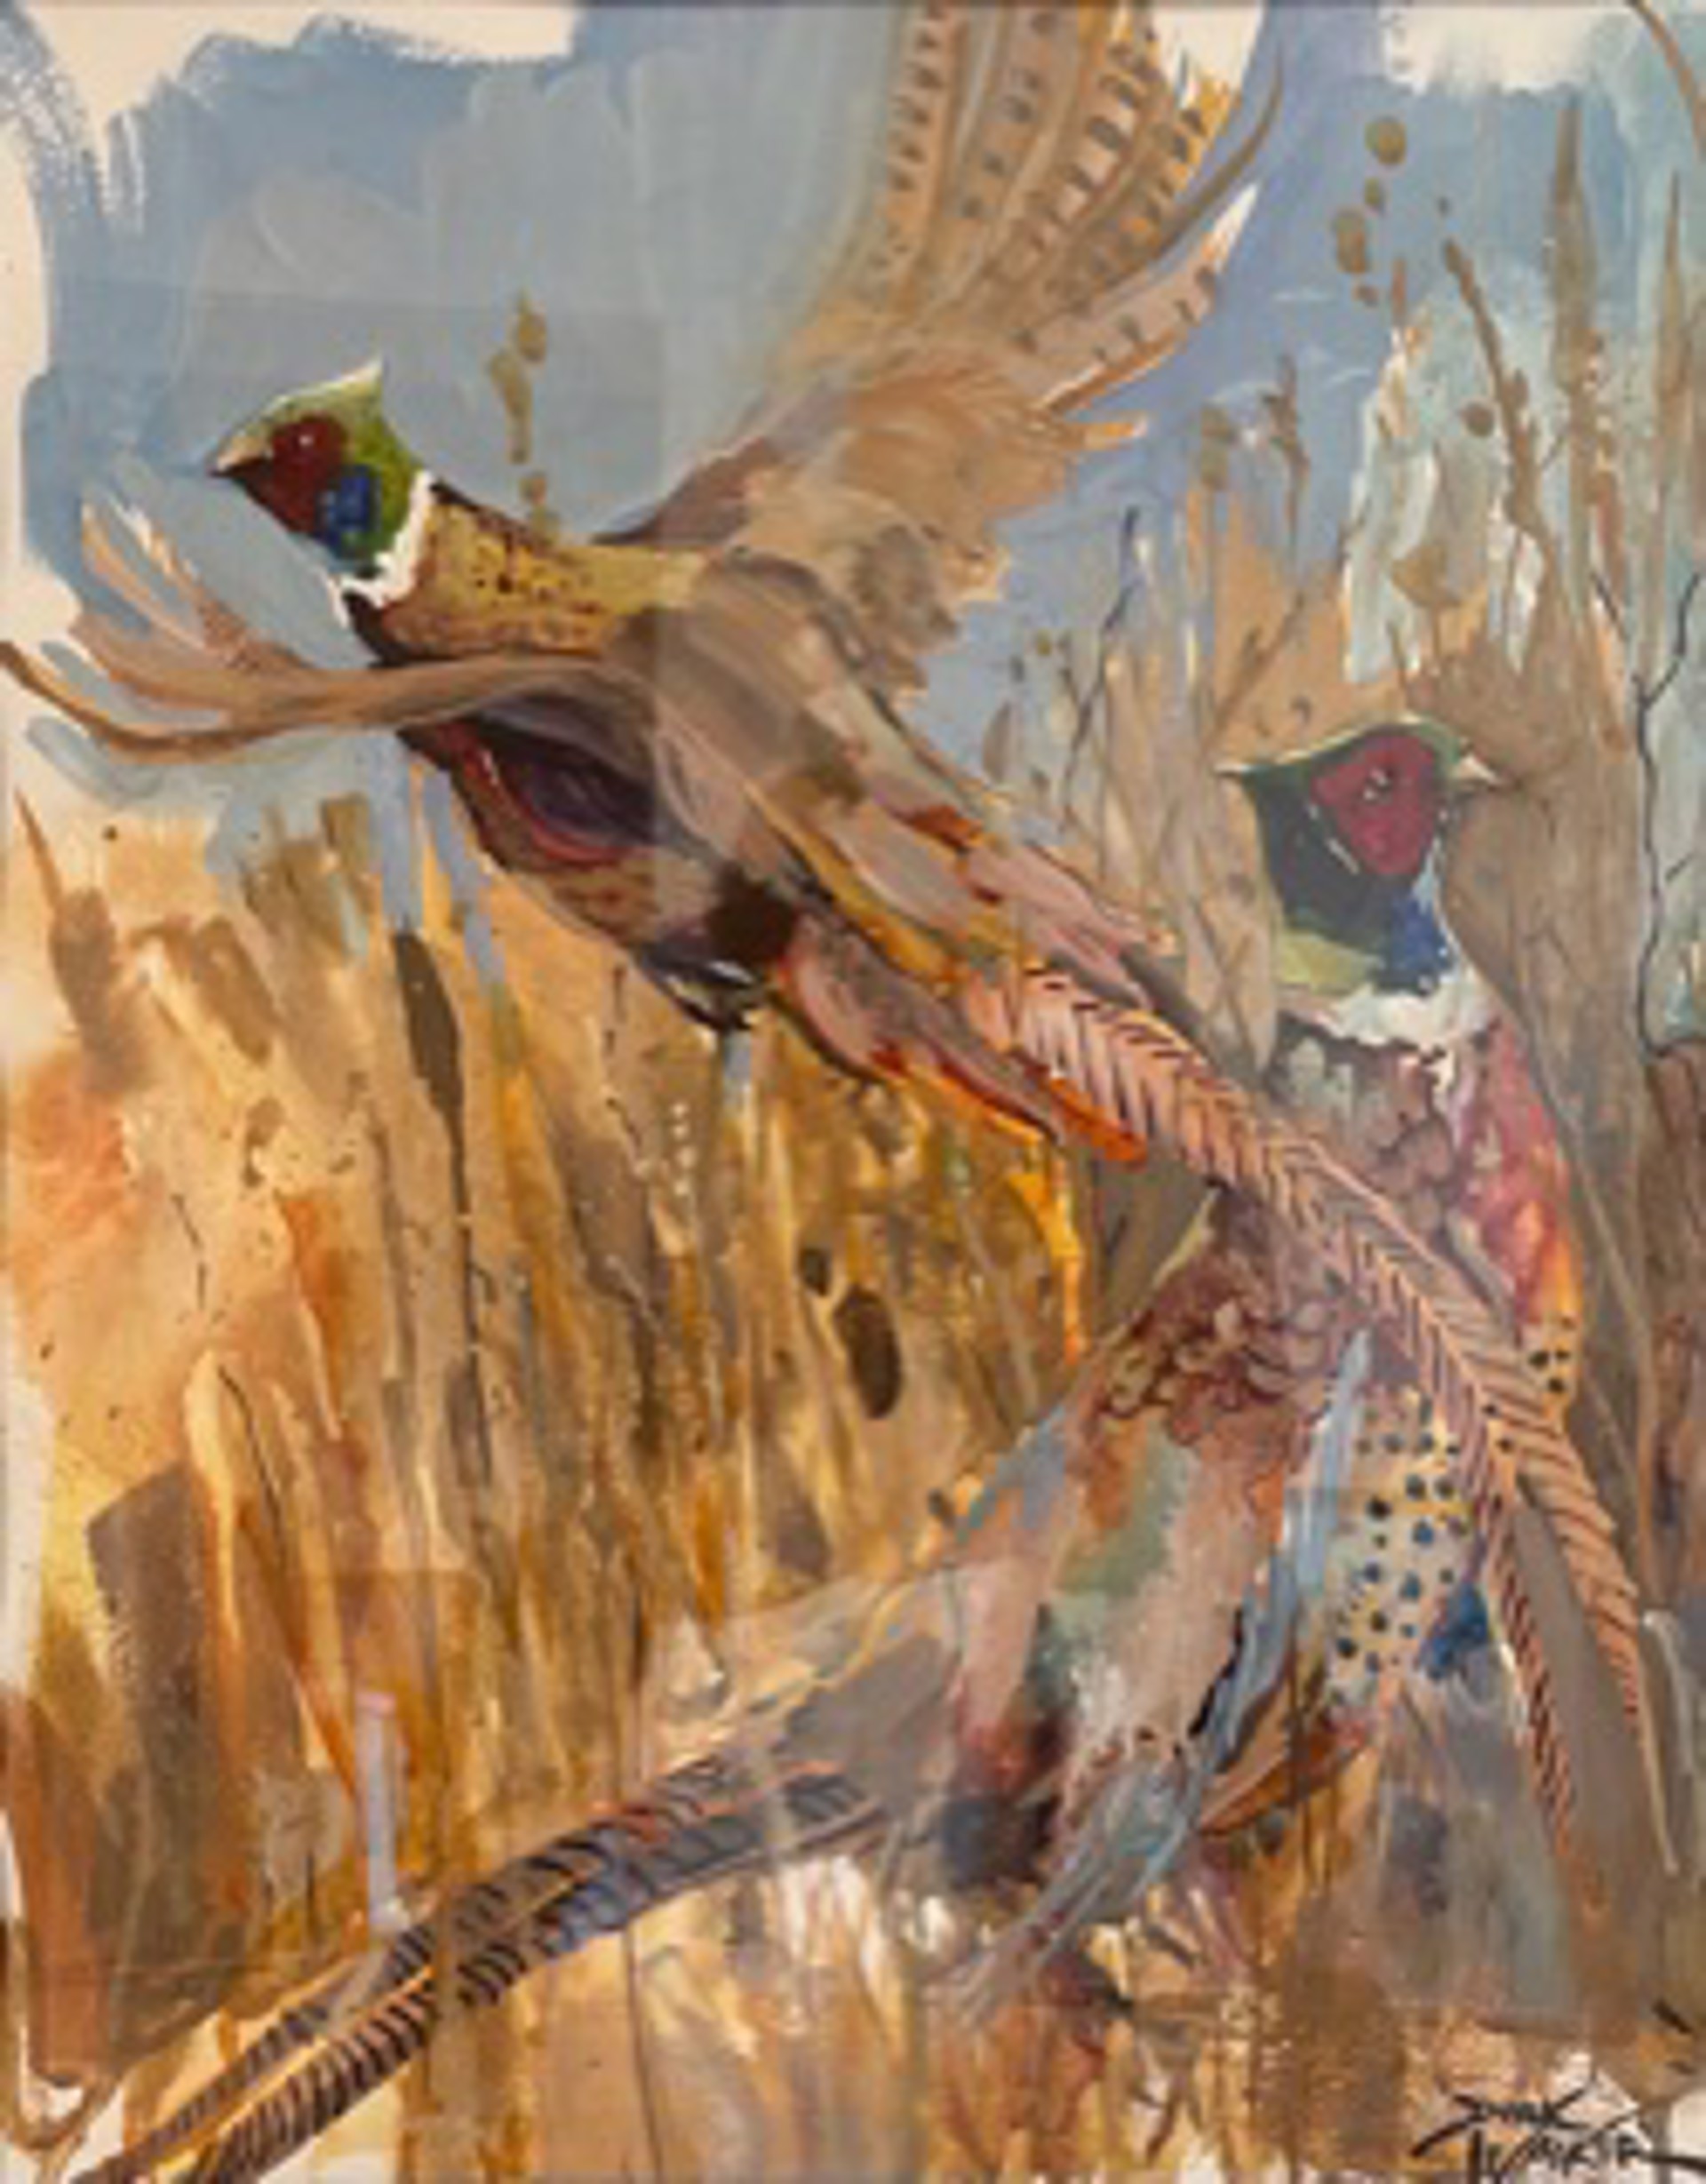 Pheasants by Dirk Walker